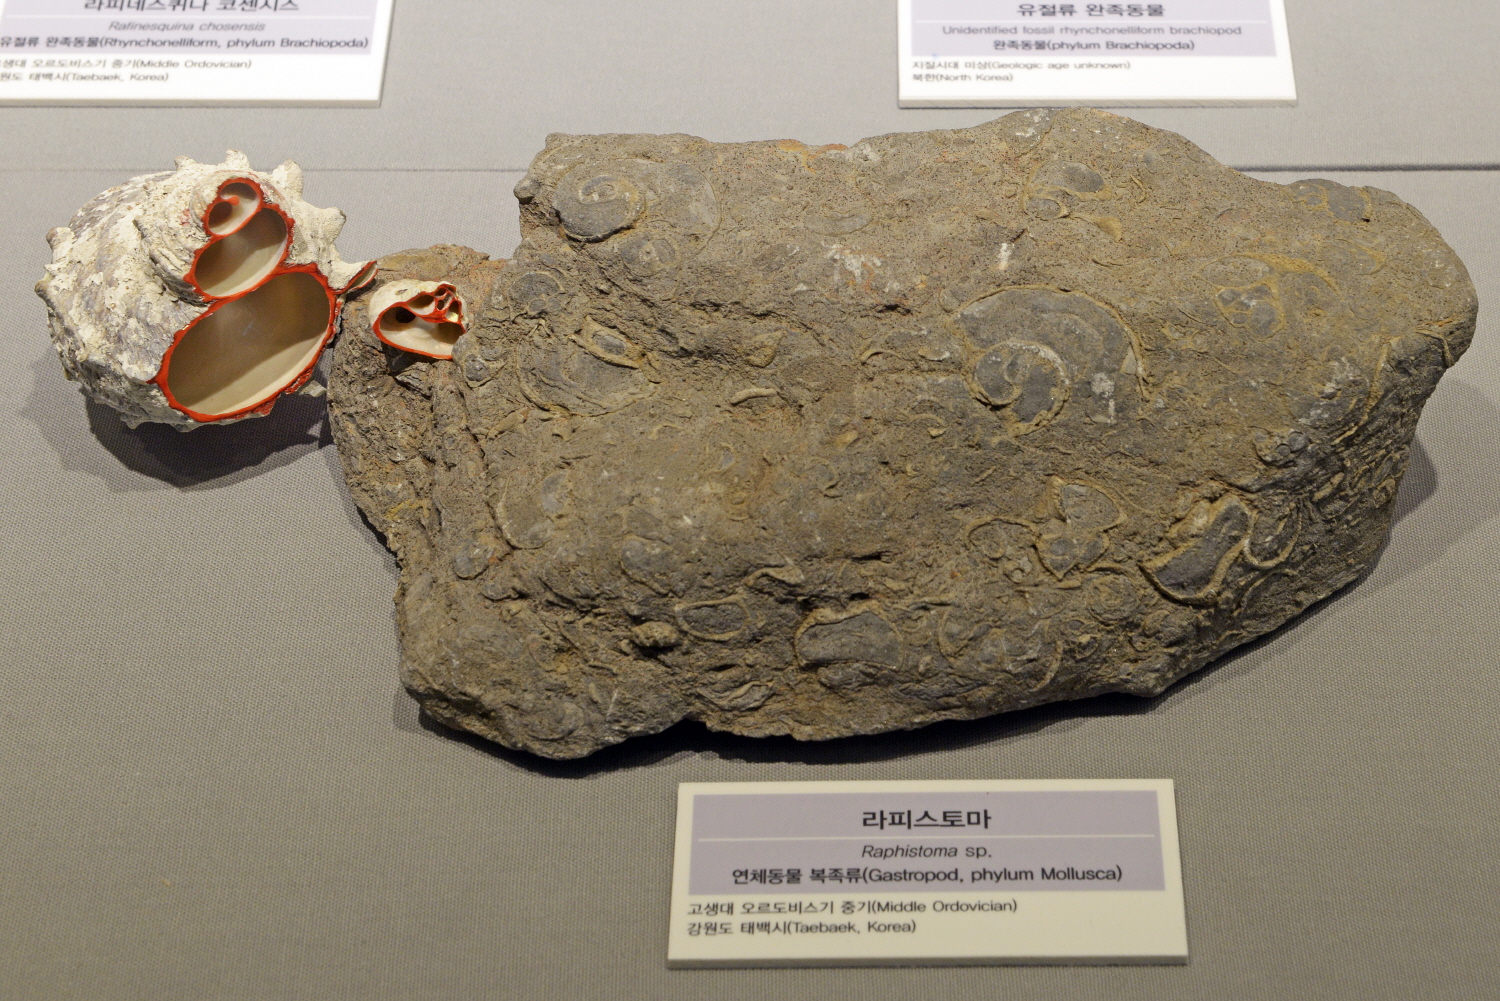 지질박물관에 전시된 오르도비스기 고둥(복족류) 석회암